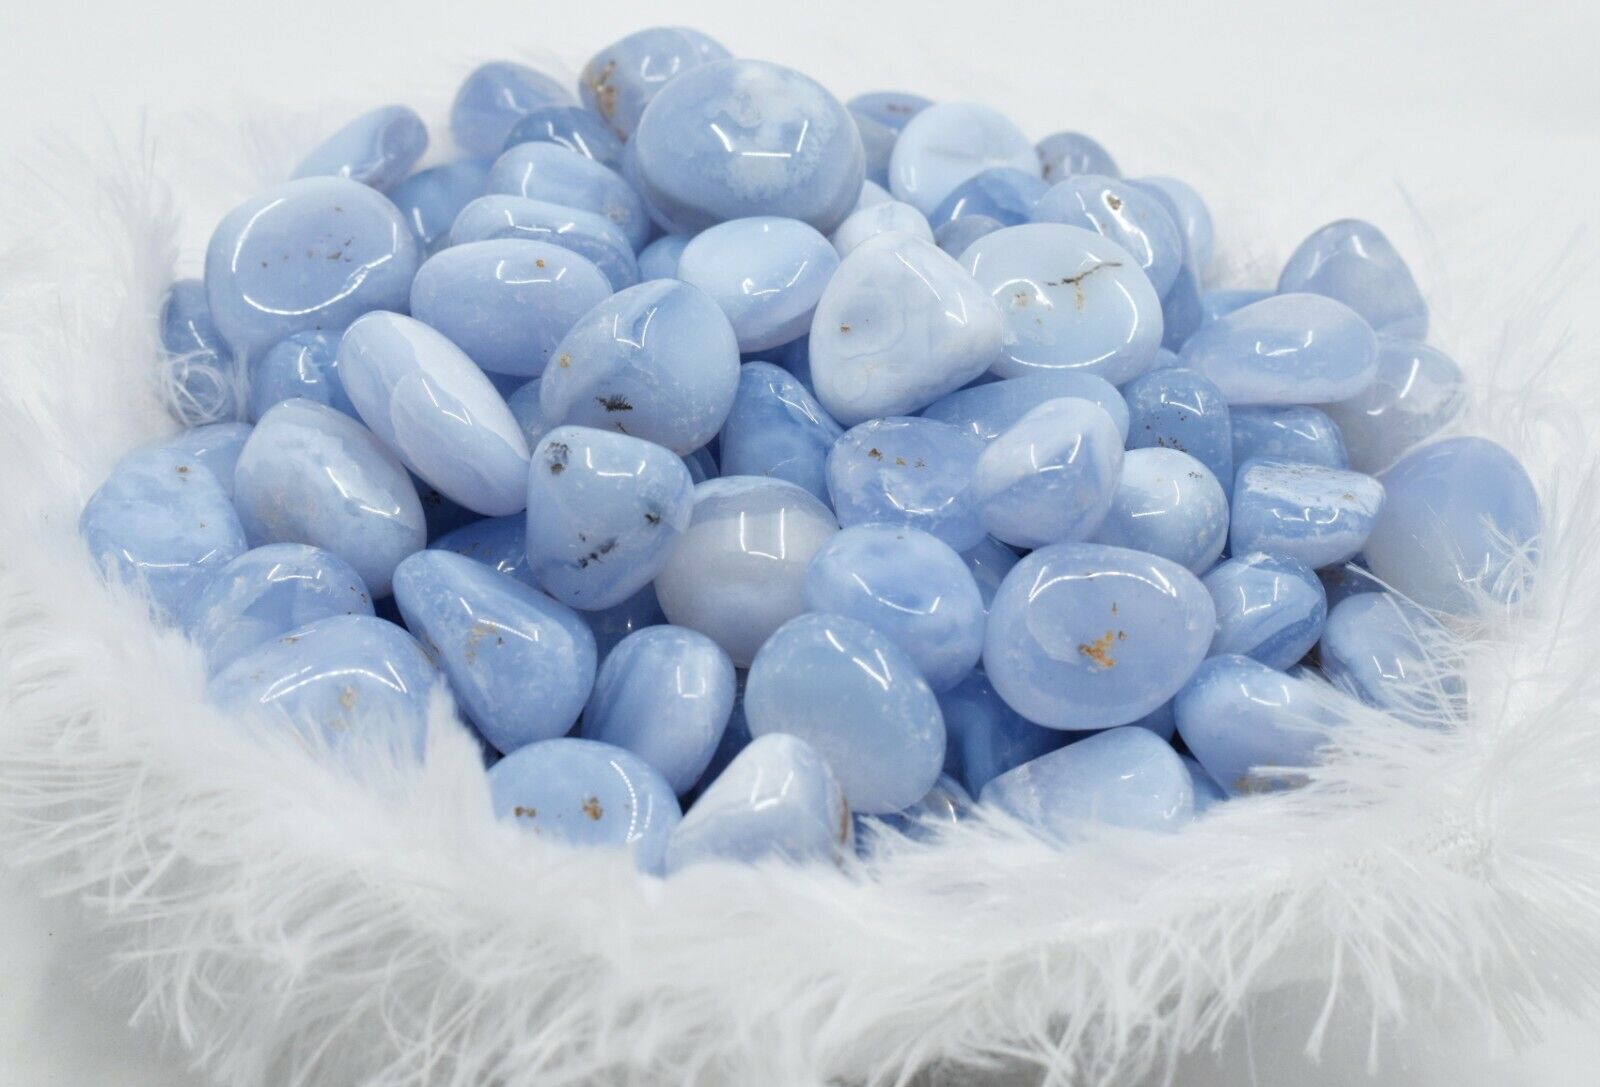 Bulk 1/2 lb (8oz) Blue Lace Agate Tumbled Stones Natural Tumbles